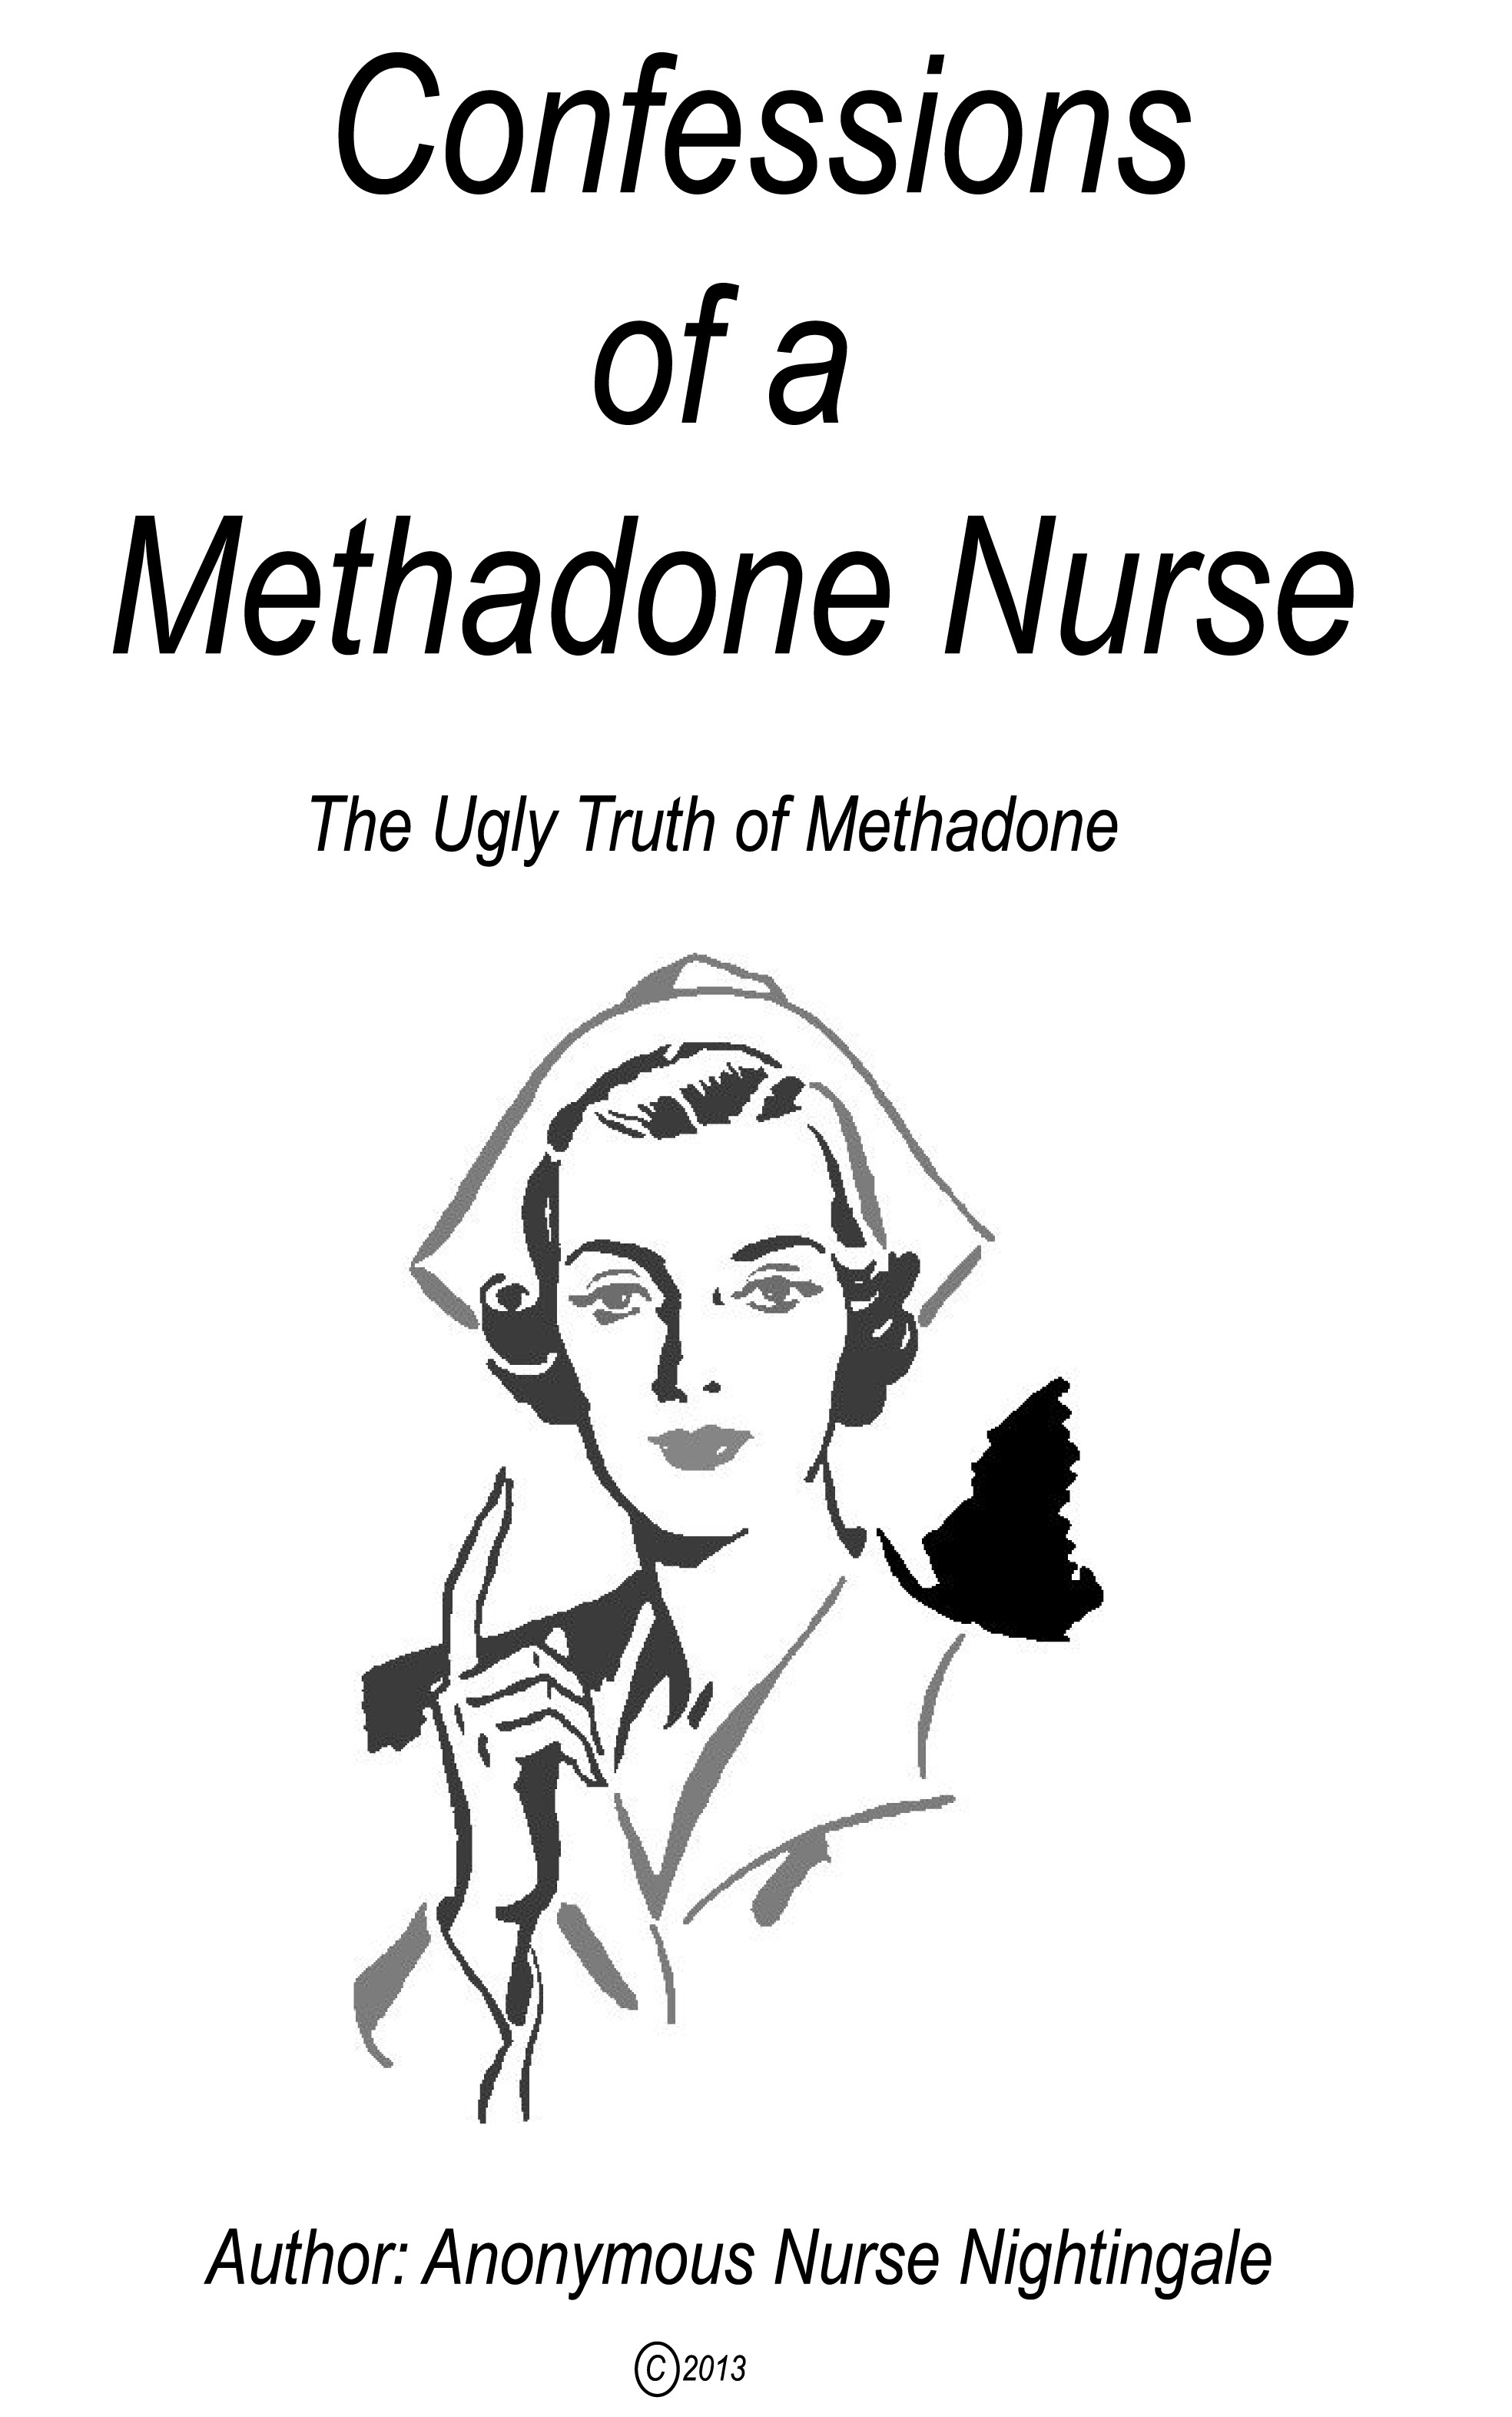 Confessions of a Methadone Nurse